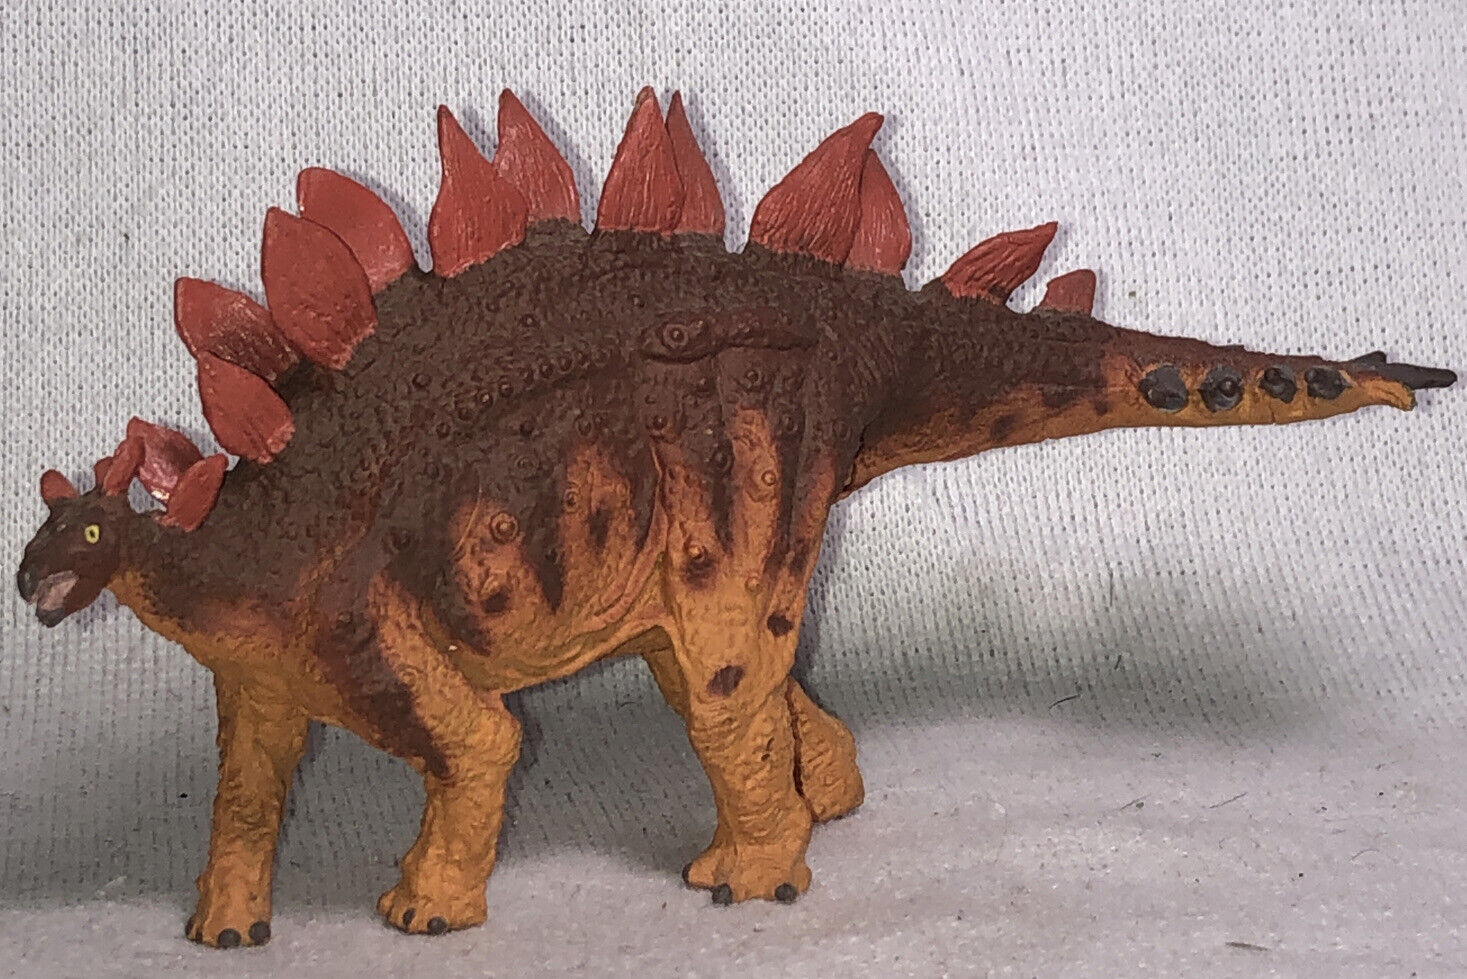 Original 7” Battat Boston Museum of Science Dinosaur Model Stegosaurus